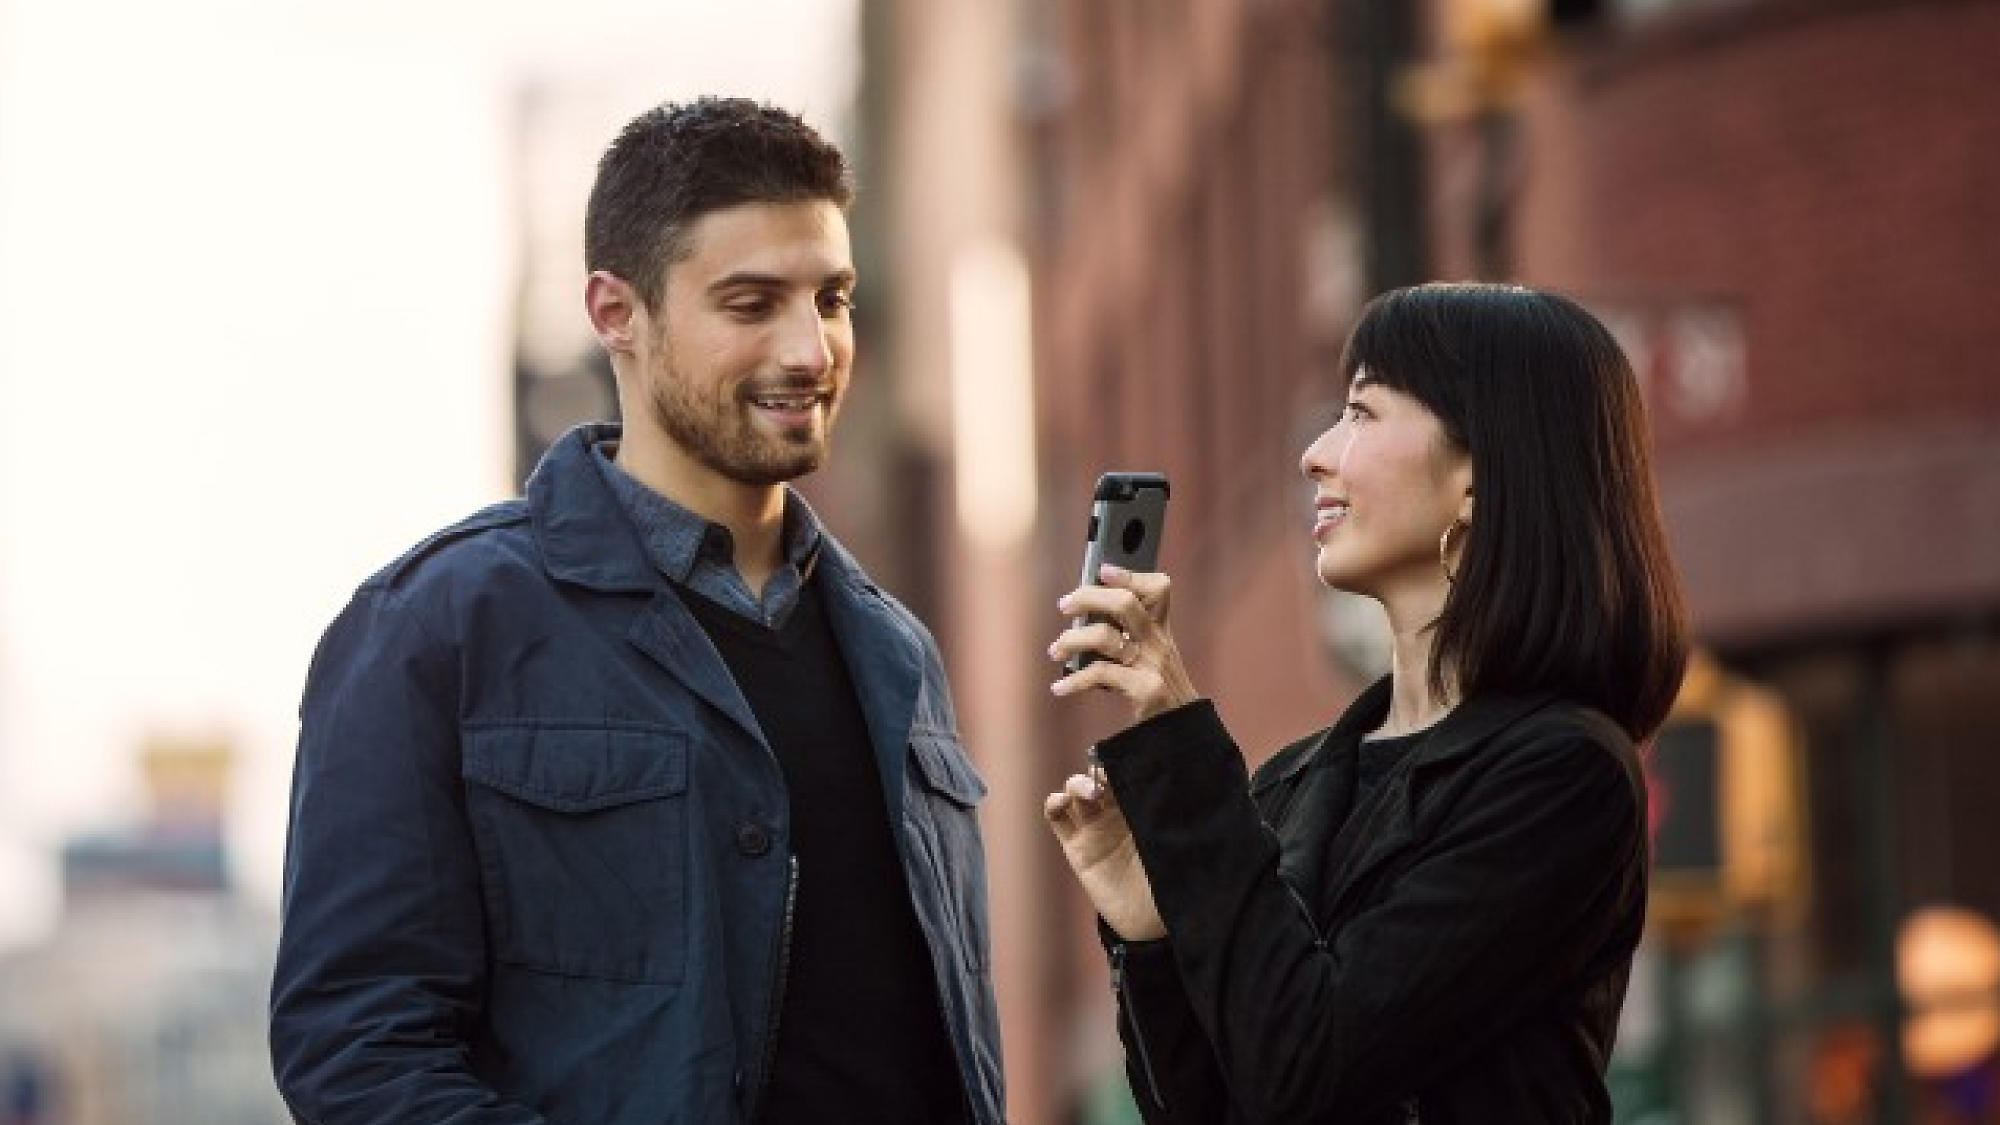 Một người phụ nữ đang cầm điện thoại thông minh trỏ về phía một người đàn ông khi cả hai đứng trên đường phố, mỉm cười và tham gia trò chuyện.